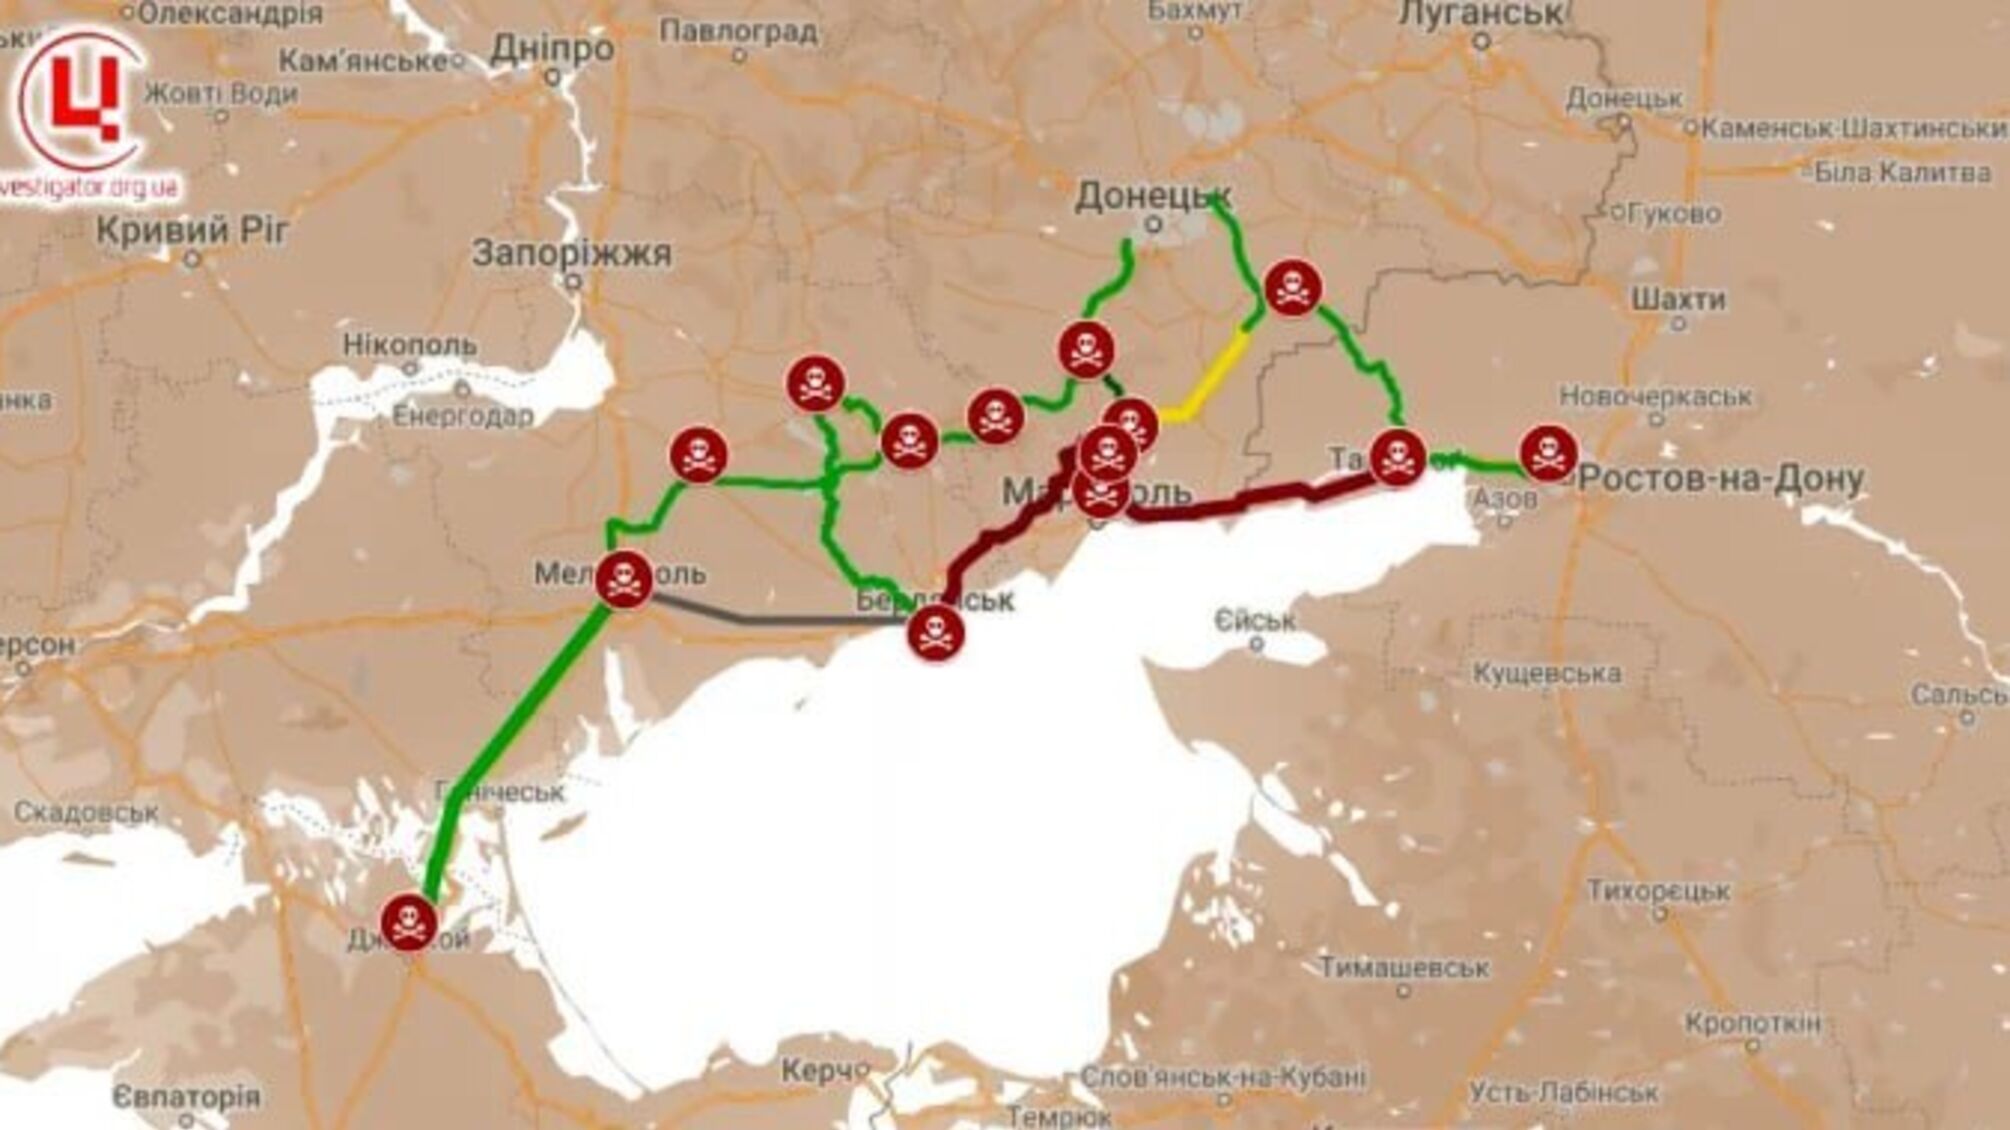 Железная дорога, которую РФ строит на оккупированной территории, может быть серьезной проблемой, — ГУР